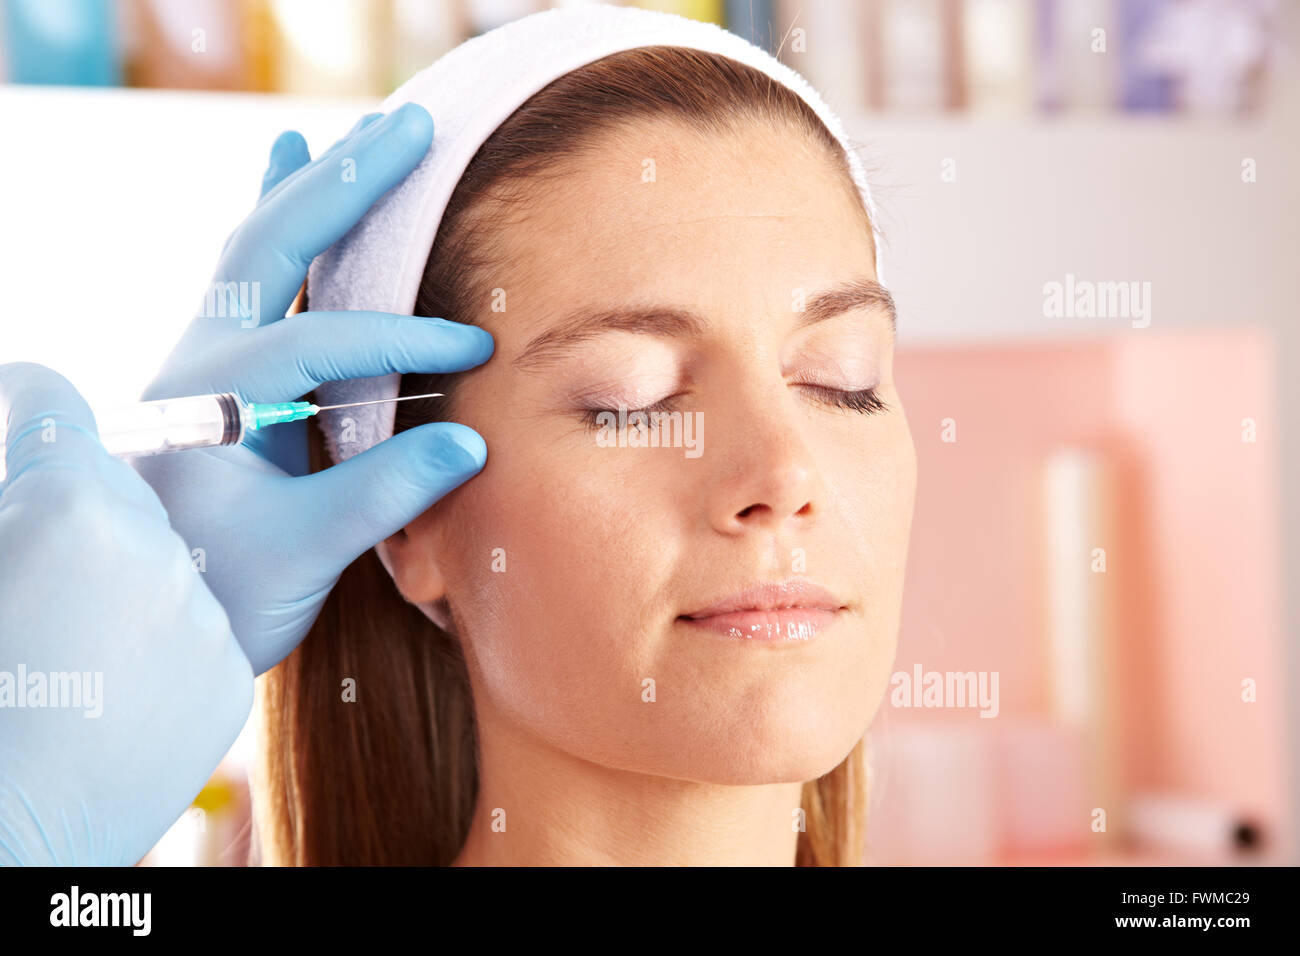 Frau In Schonheitsklinik Immer Botox Injektion Augenfalten Entfernen Stockfotografie Alamy